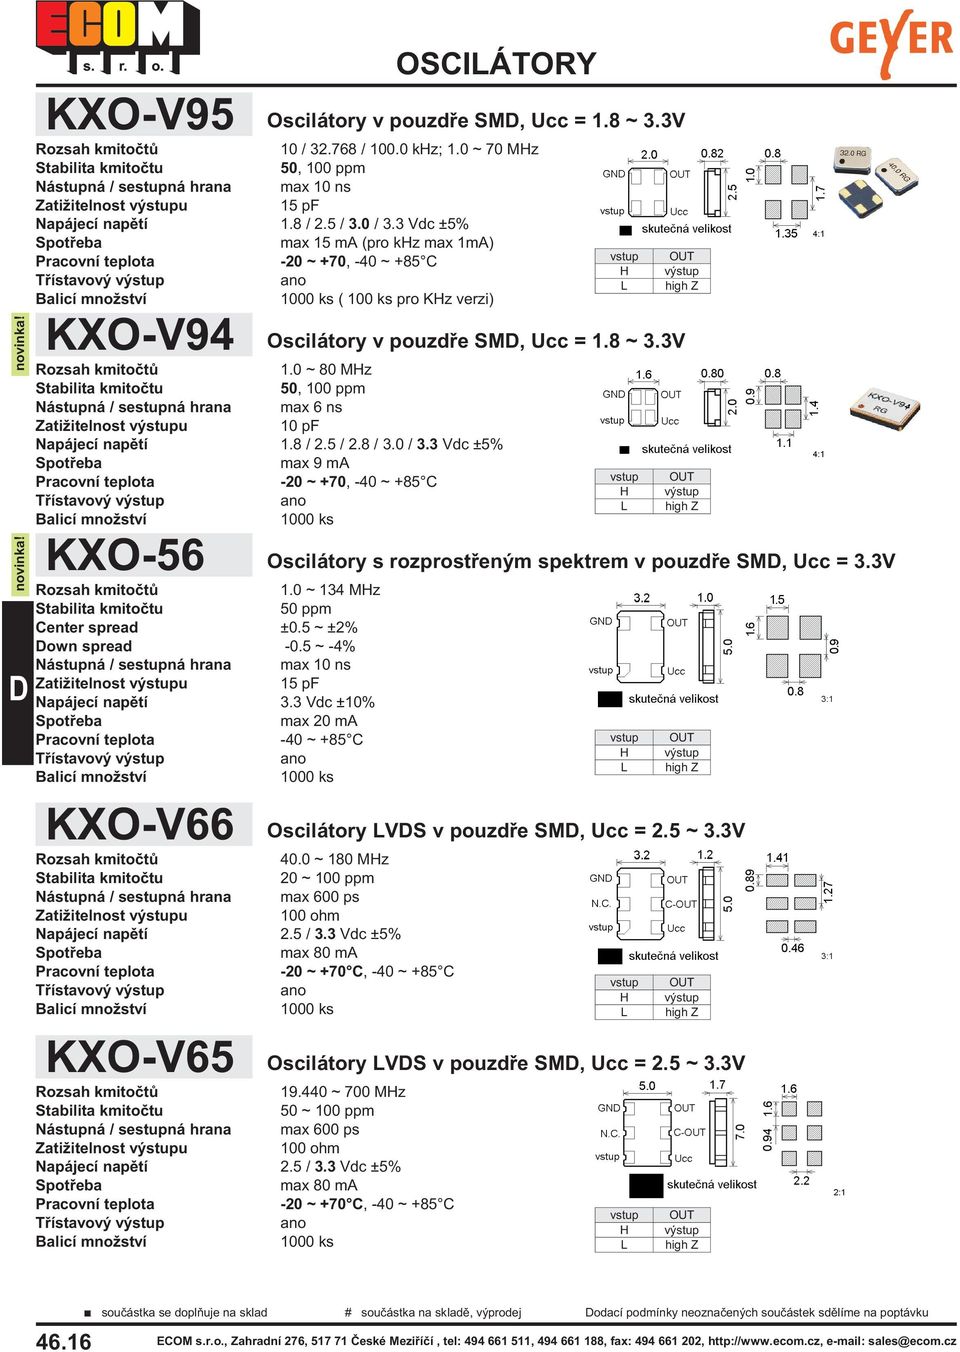 5 ~ -4% Nástupná / sestupná hrana max 10 ns 15 pf Napájecí napìtí 3.3 Vdc ±10% max 20 ma -40 ~ +85 C KXO-V66 Oscilátory v pouzdøe SM, Ucc = 1.8 ~ 3.